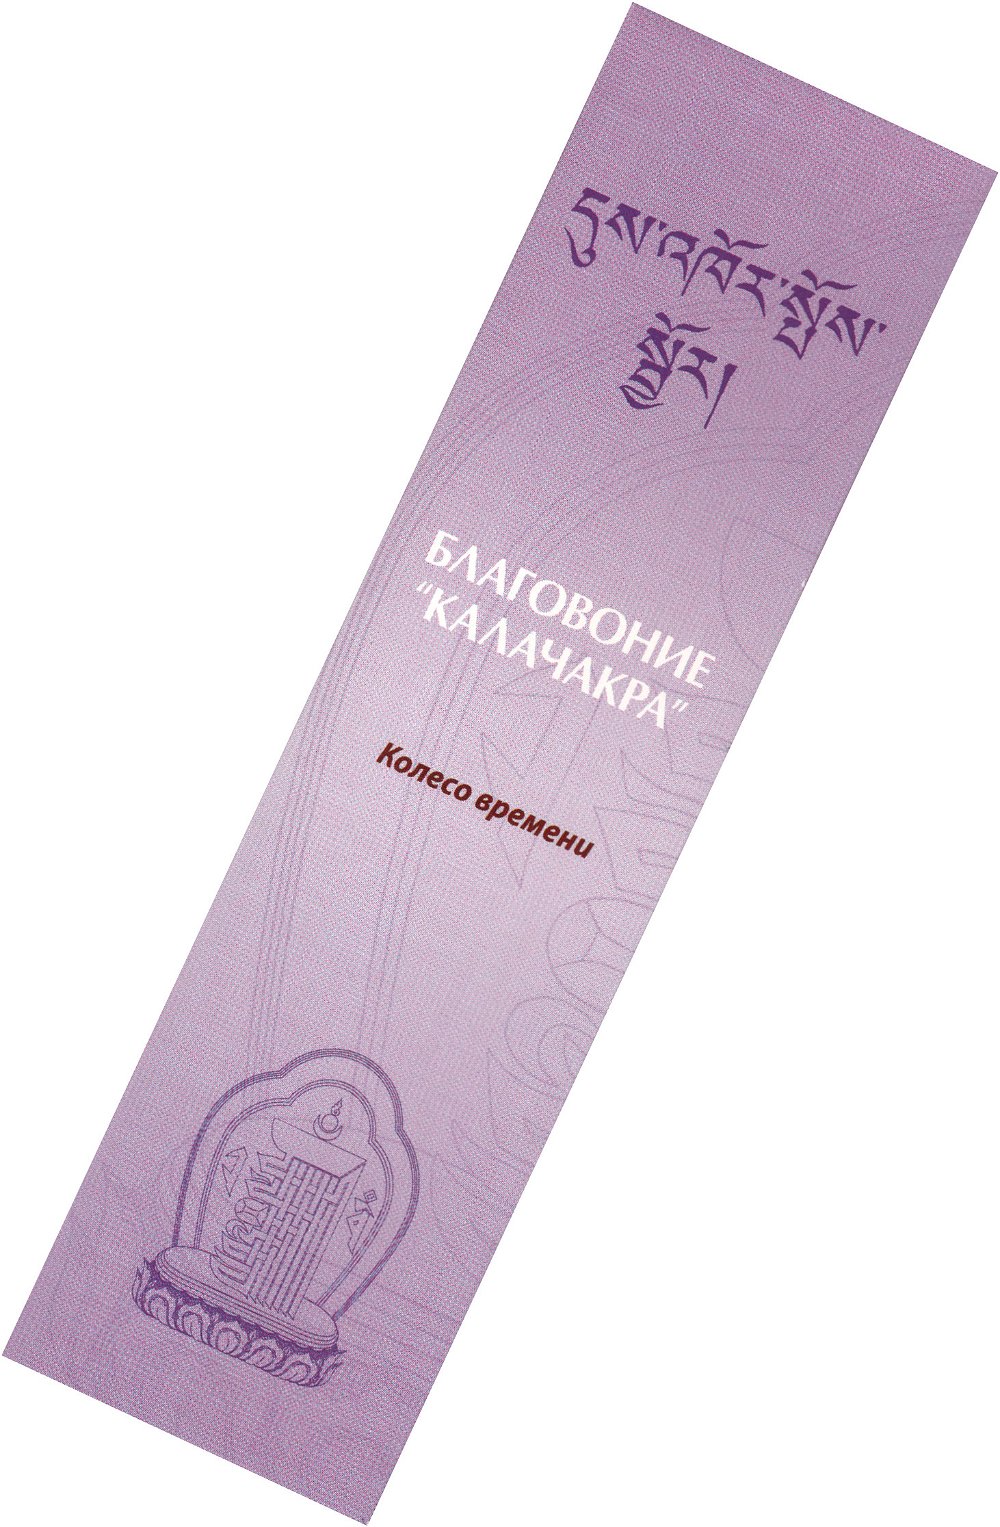 Благовоние Kalachakra Incense (Калачакра), 20 палочек по 14 см, 20, Калачакра, 